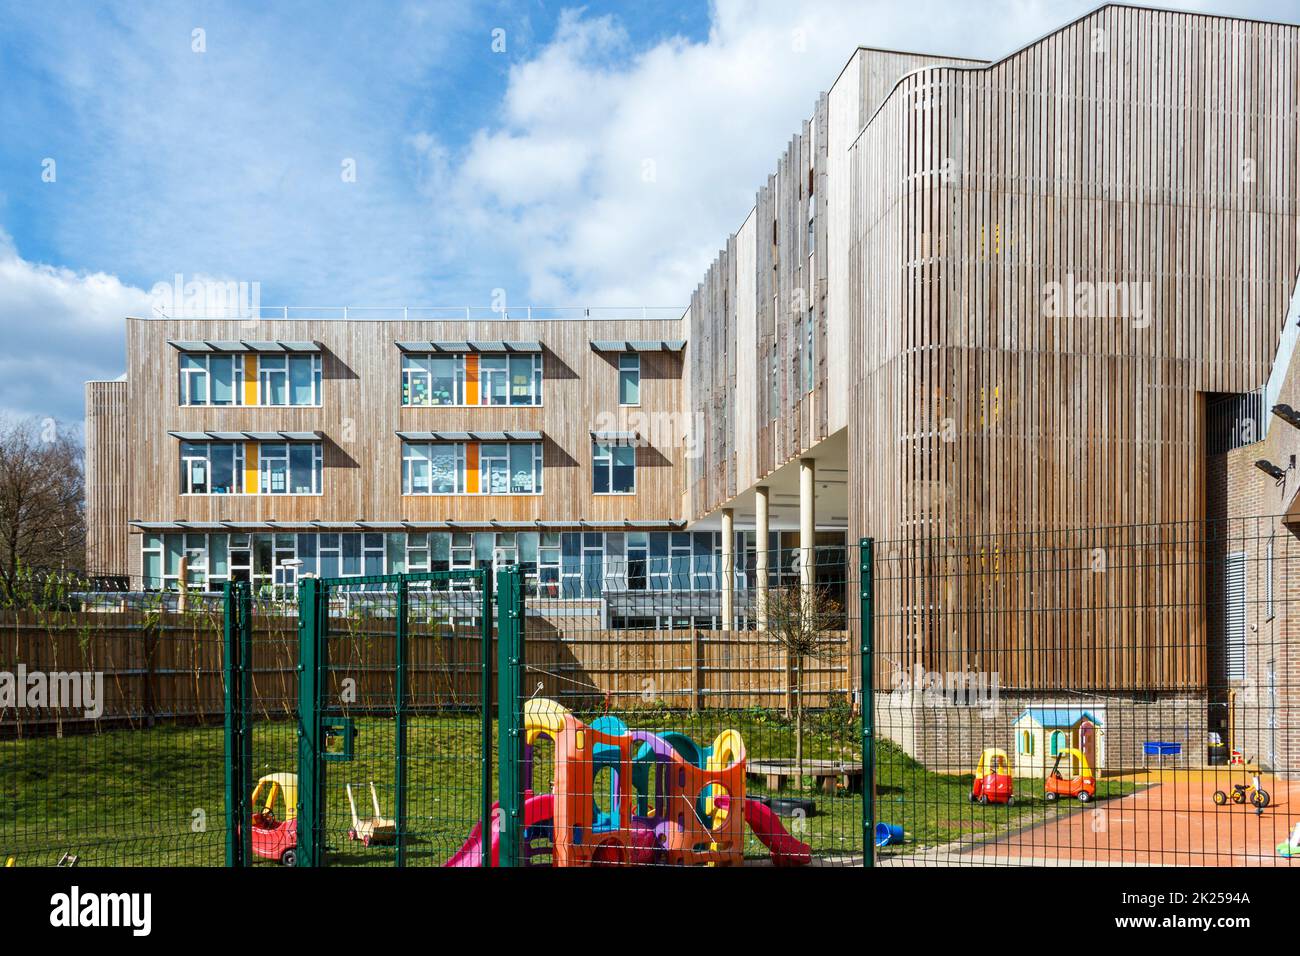 Die mit dem RIBA-Award ausgezeichnete Ashmount Primary School, die erste „in Use“-Schule Großbritanniens mit CO2-negativen Auswirkungen, Bowler's Nursery im Vordergrund, North London, Großbritannien Stockfoto